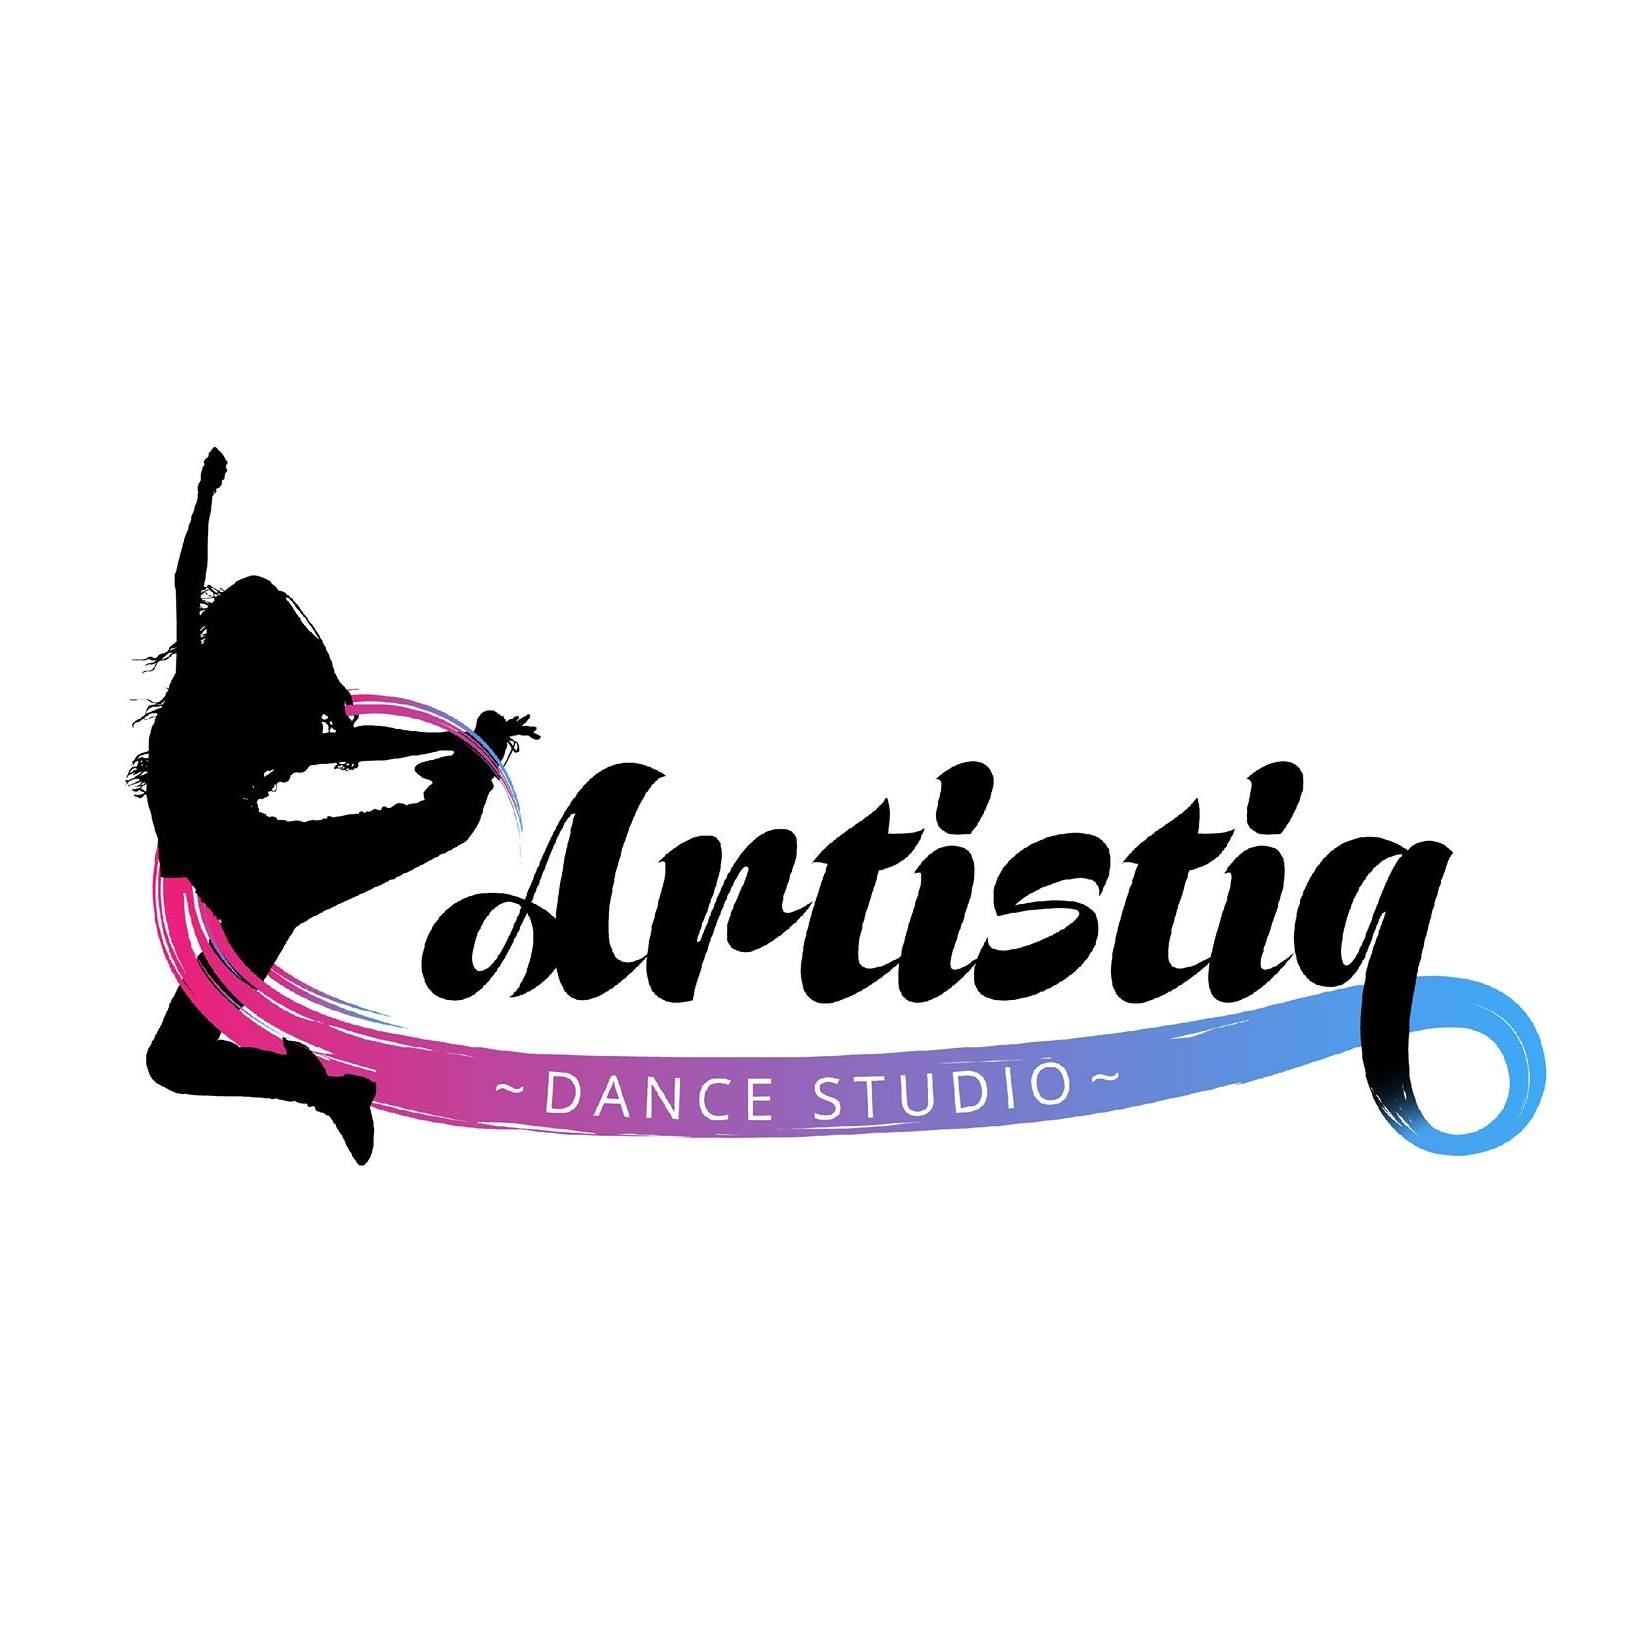 Shutdown - Artistiq Dance Studio Logo